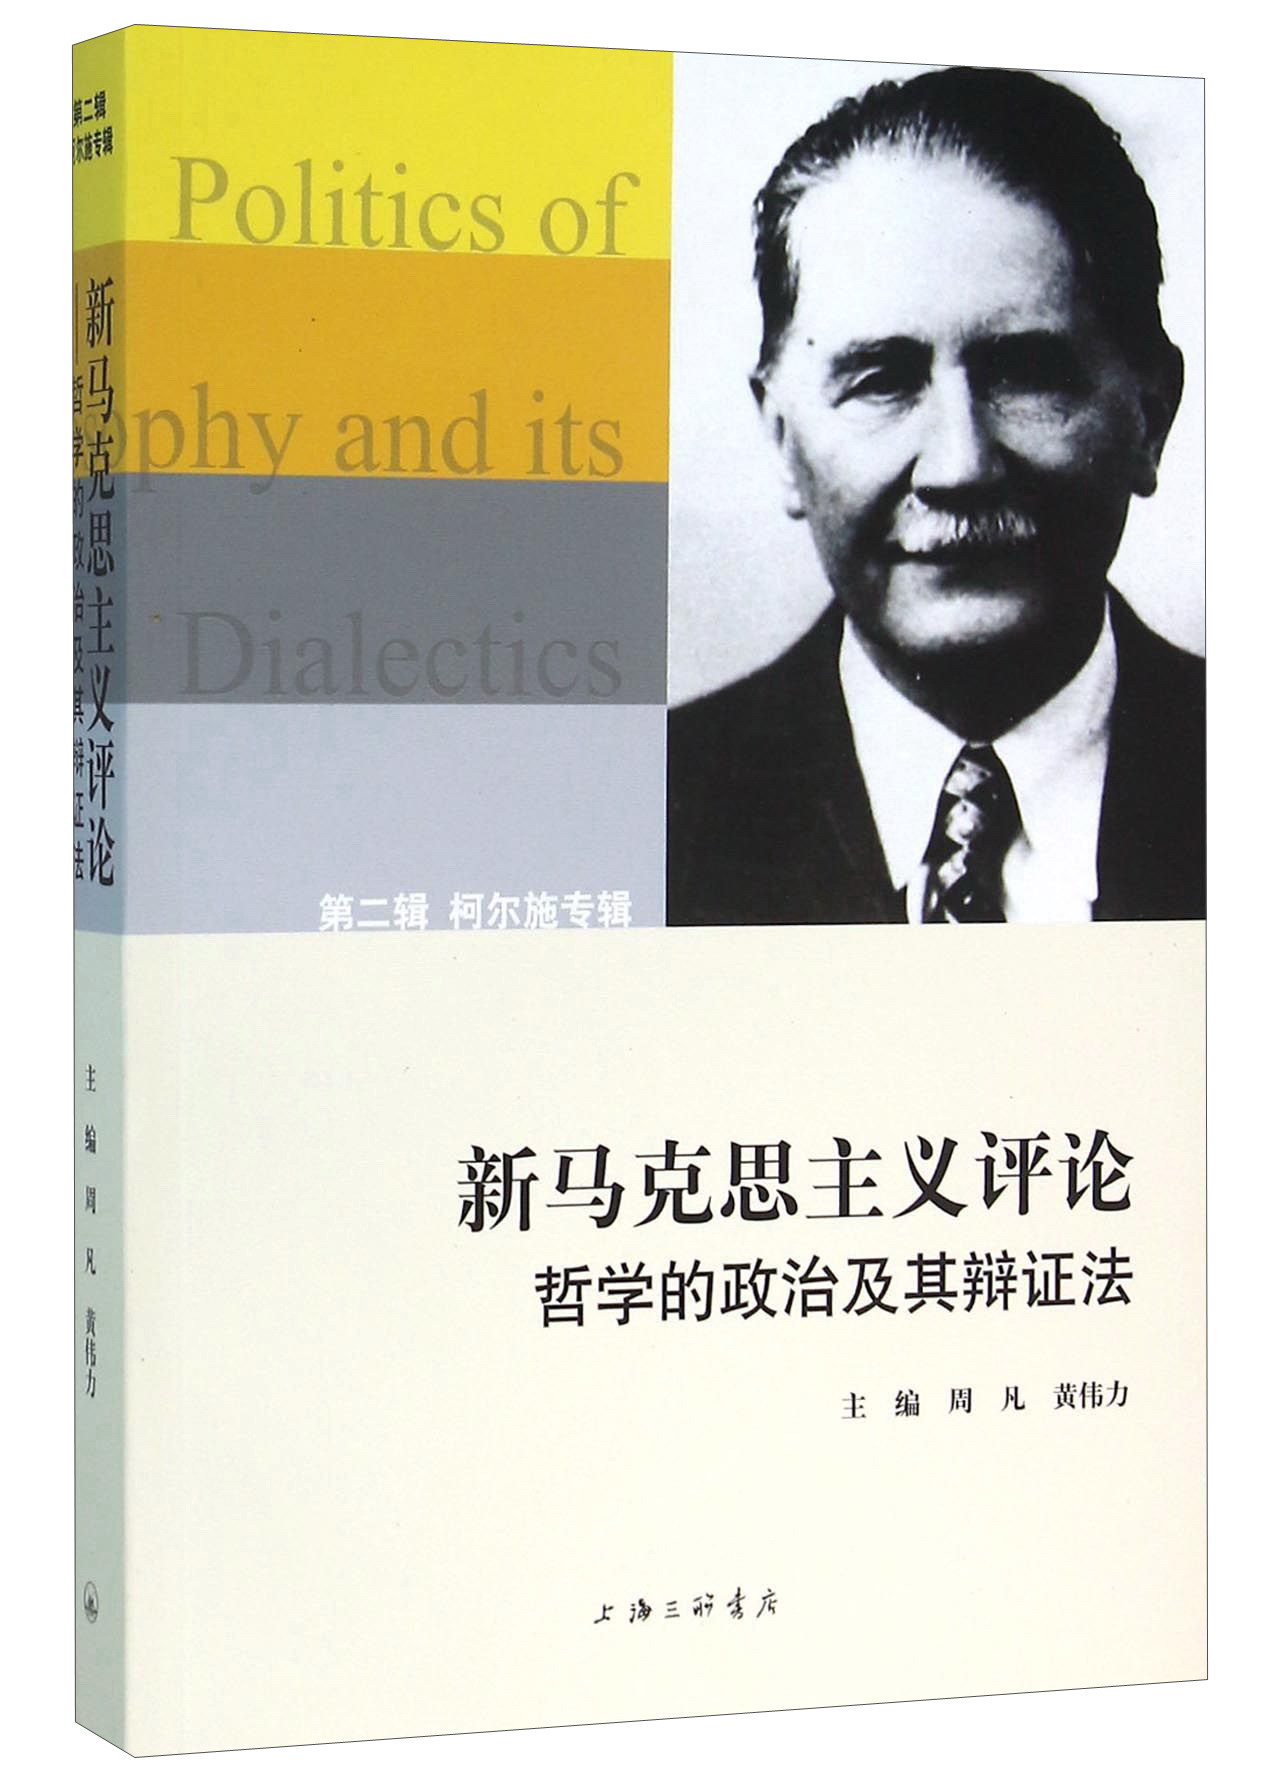 新马克思主义评论 哲学的政治及其辩证法 （第二辑） 柯尔施专辑 azw3格式下载